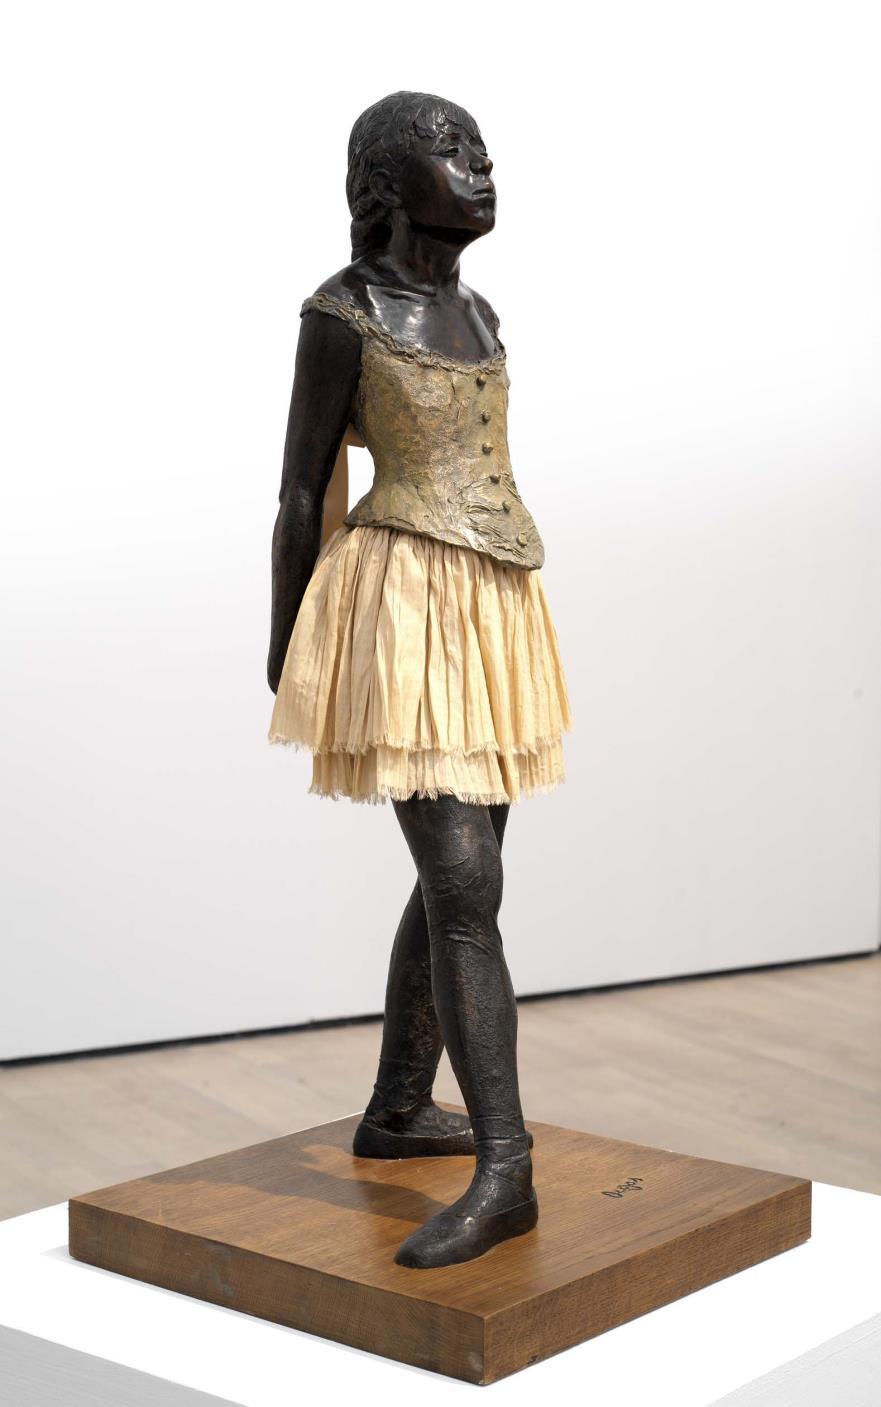 A pequena dançarina de 14 anos, Degas esculpiu essa figura em